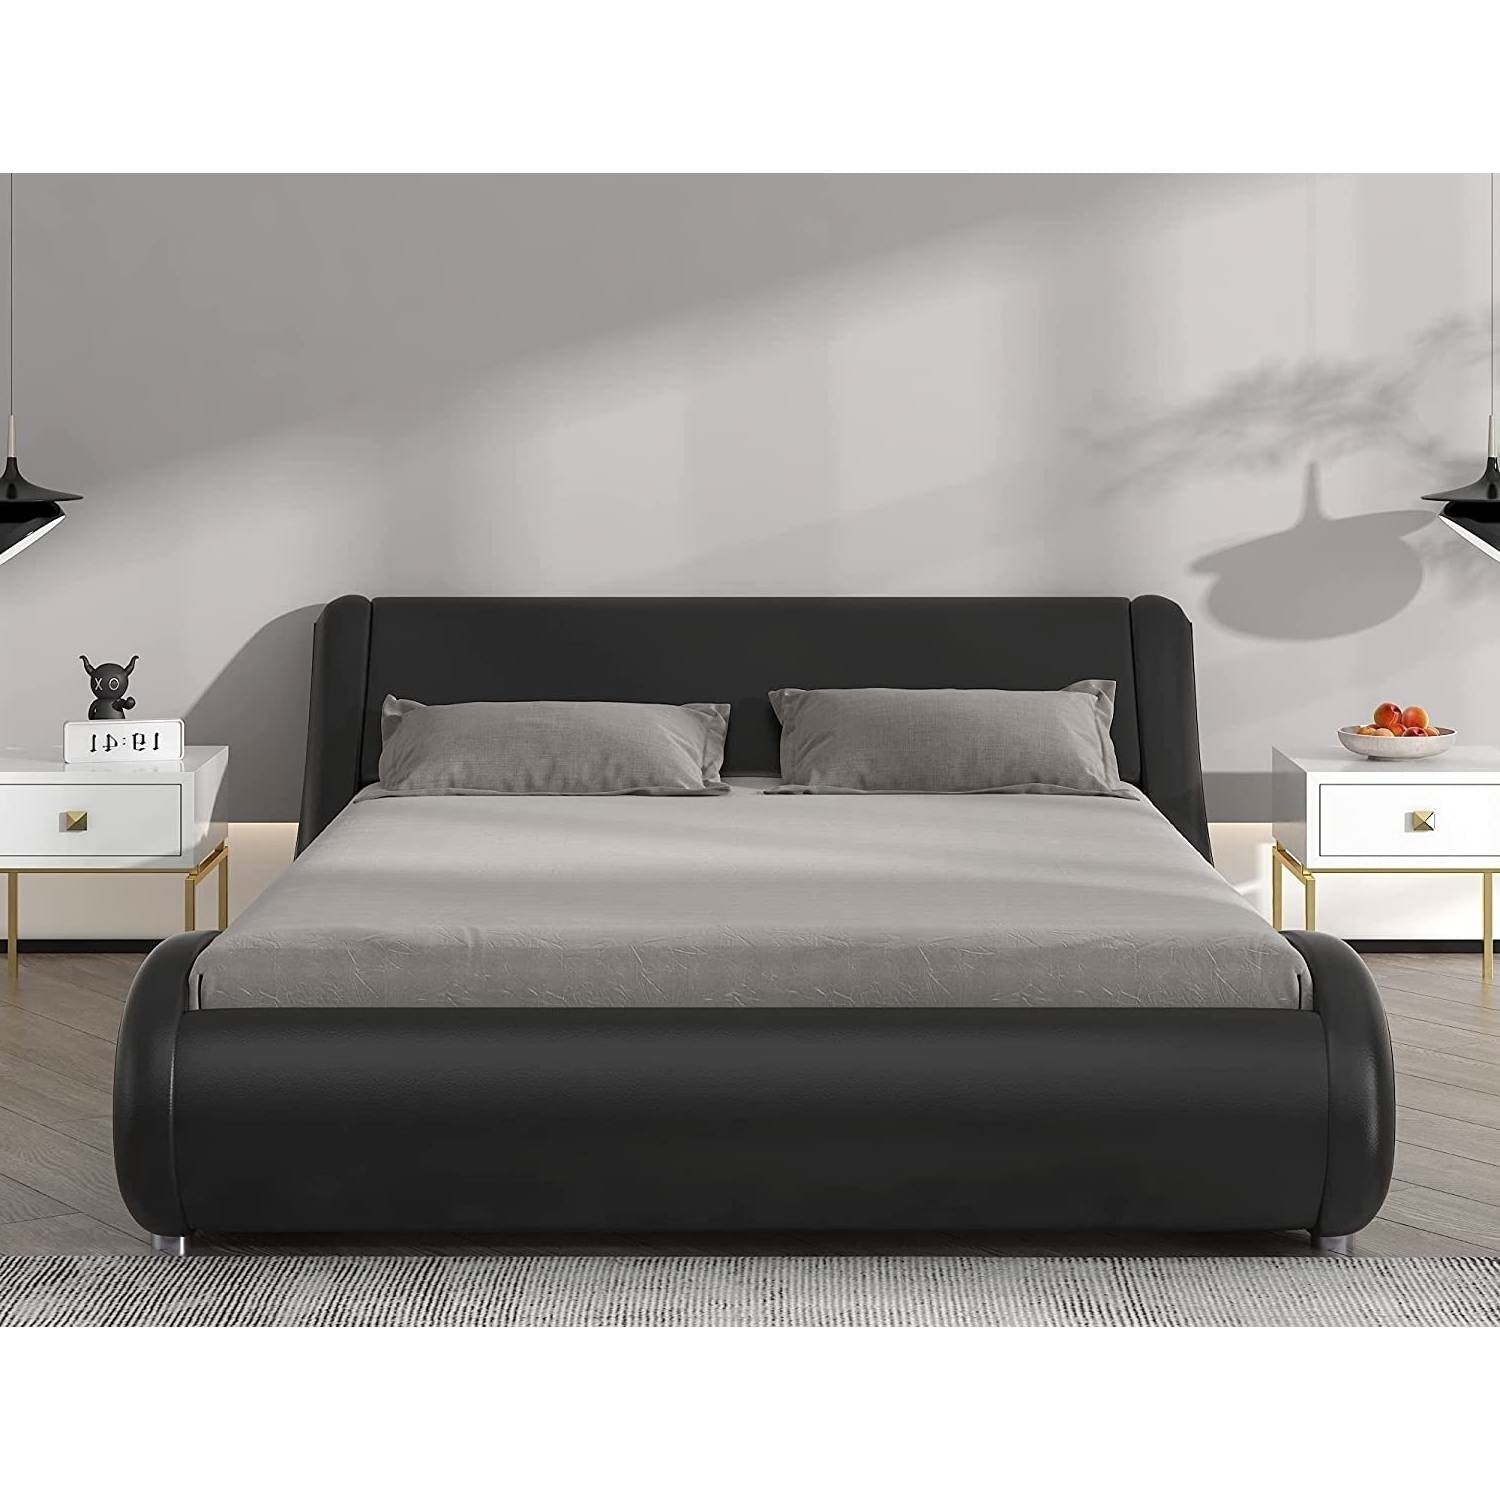 Bedroom > Bed Frames > Platform Beds - Full Modern Black Faux Leather Upholstered Platform Bed Frame With Headboard